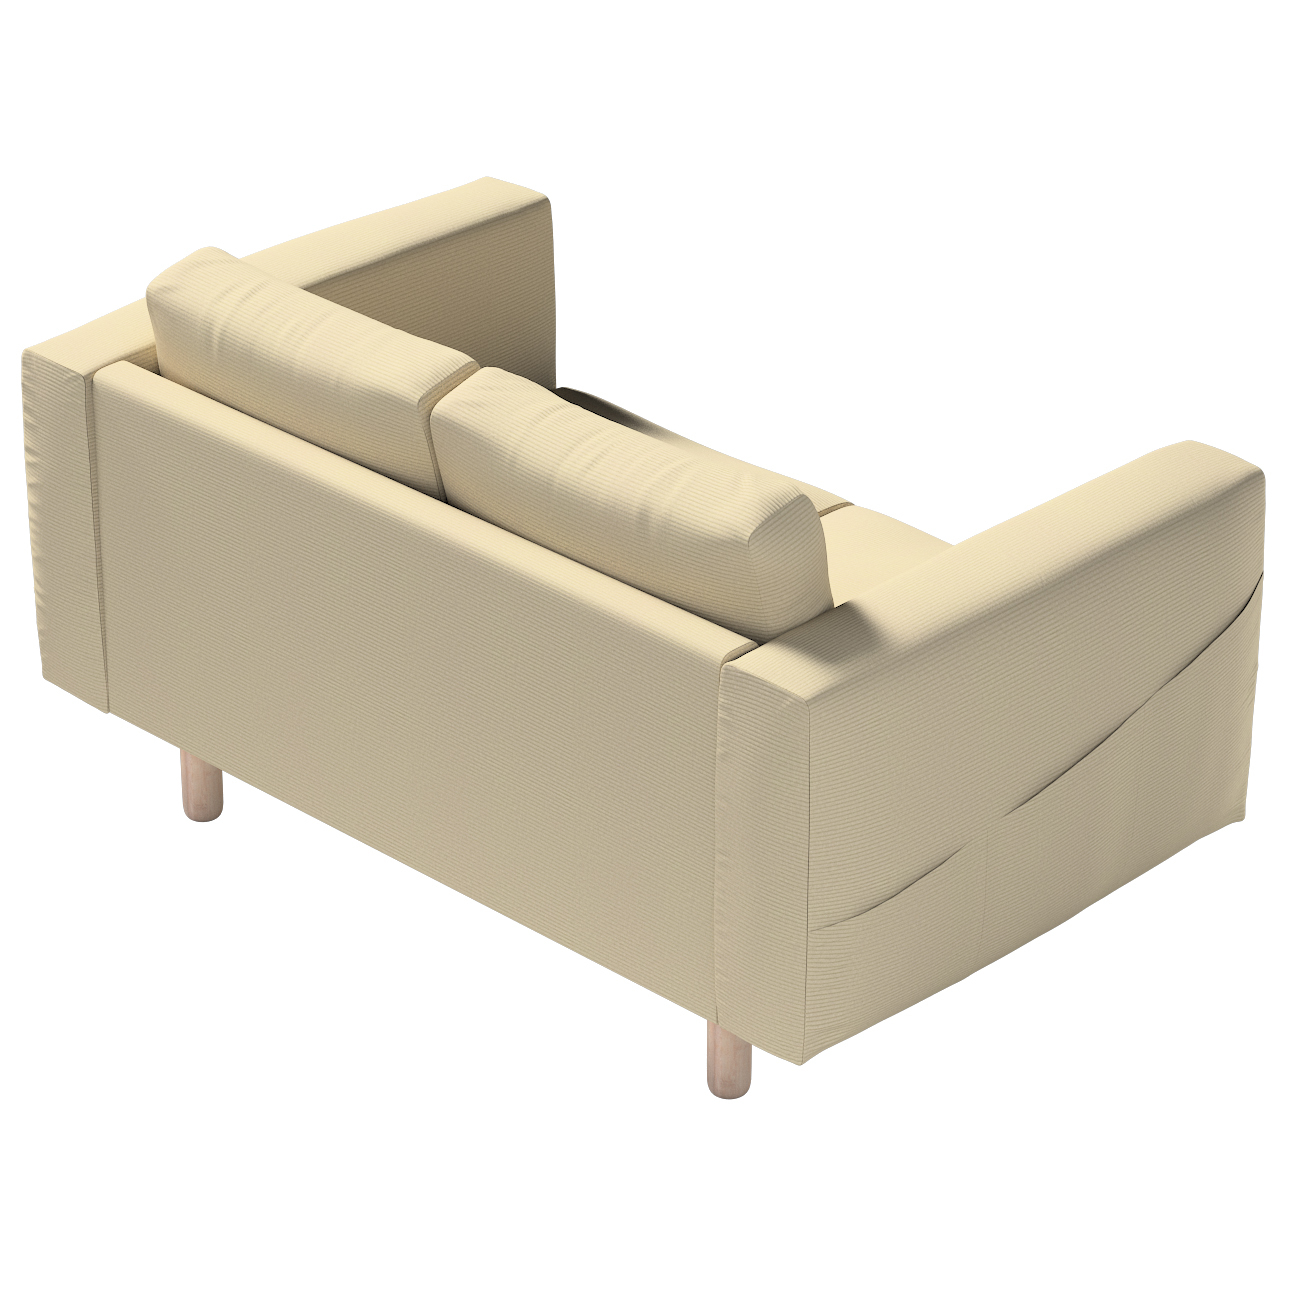 Bezug für Norsborg 2-Sitzer Sofa, beige, Norsborg 2-Sitzer Sofabezug, Manch günstig online kaufen